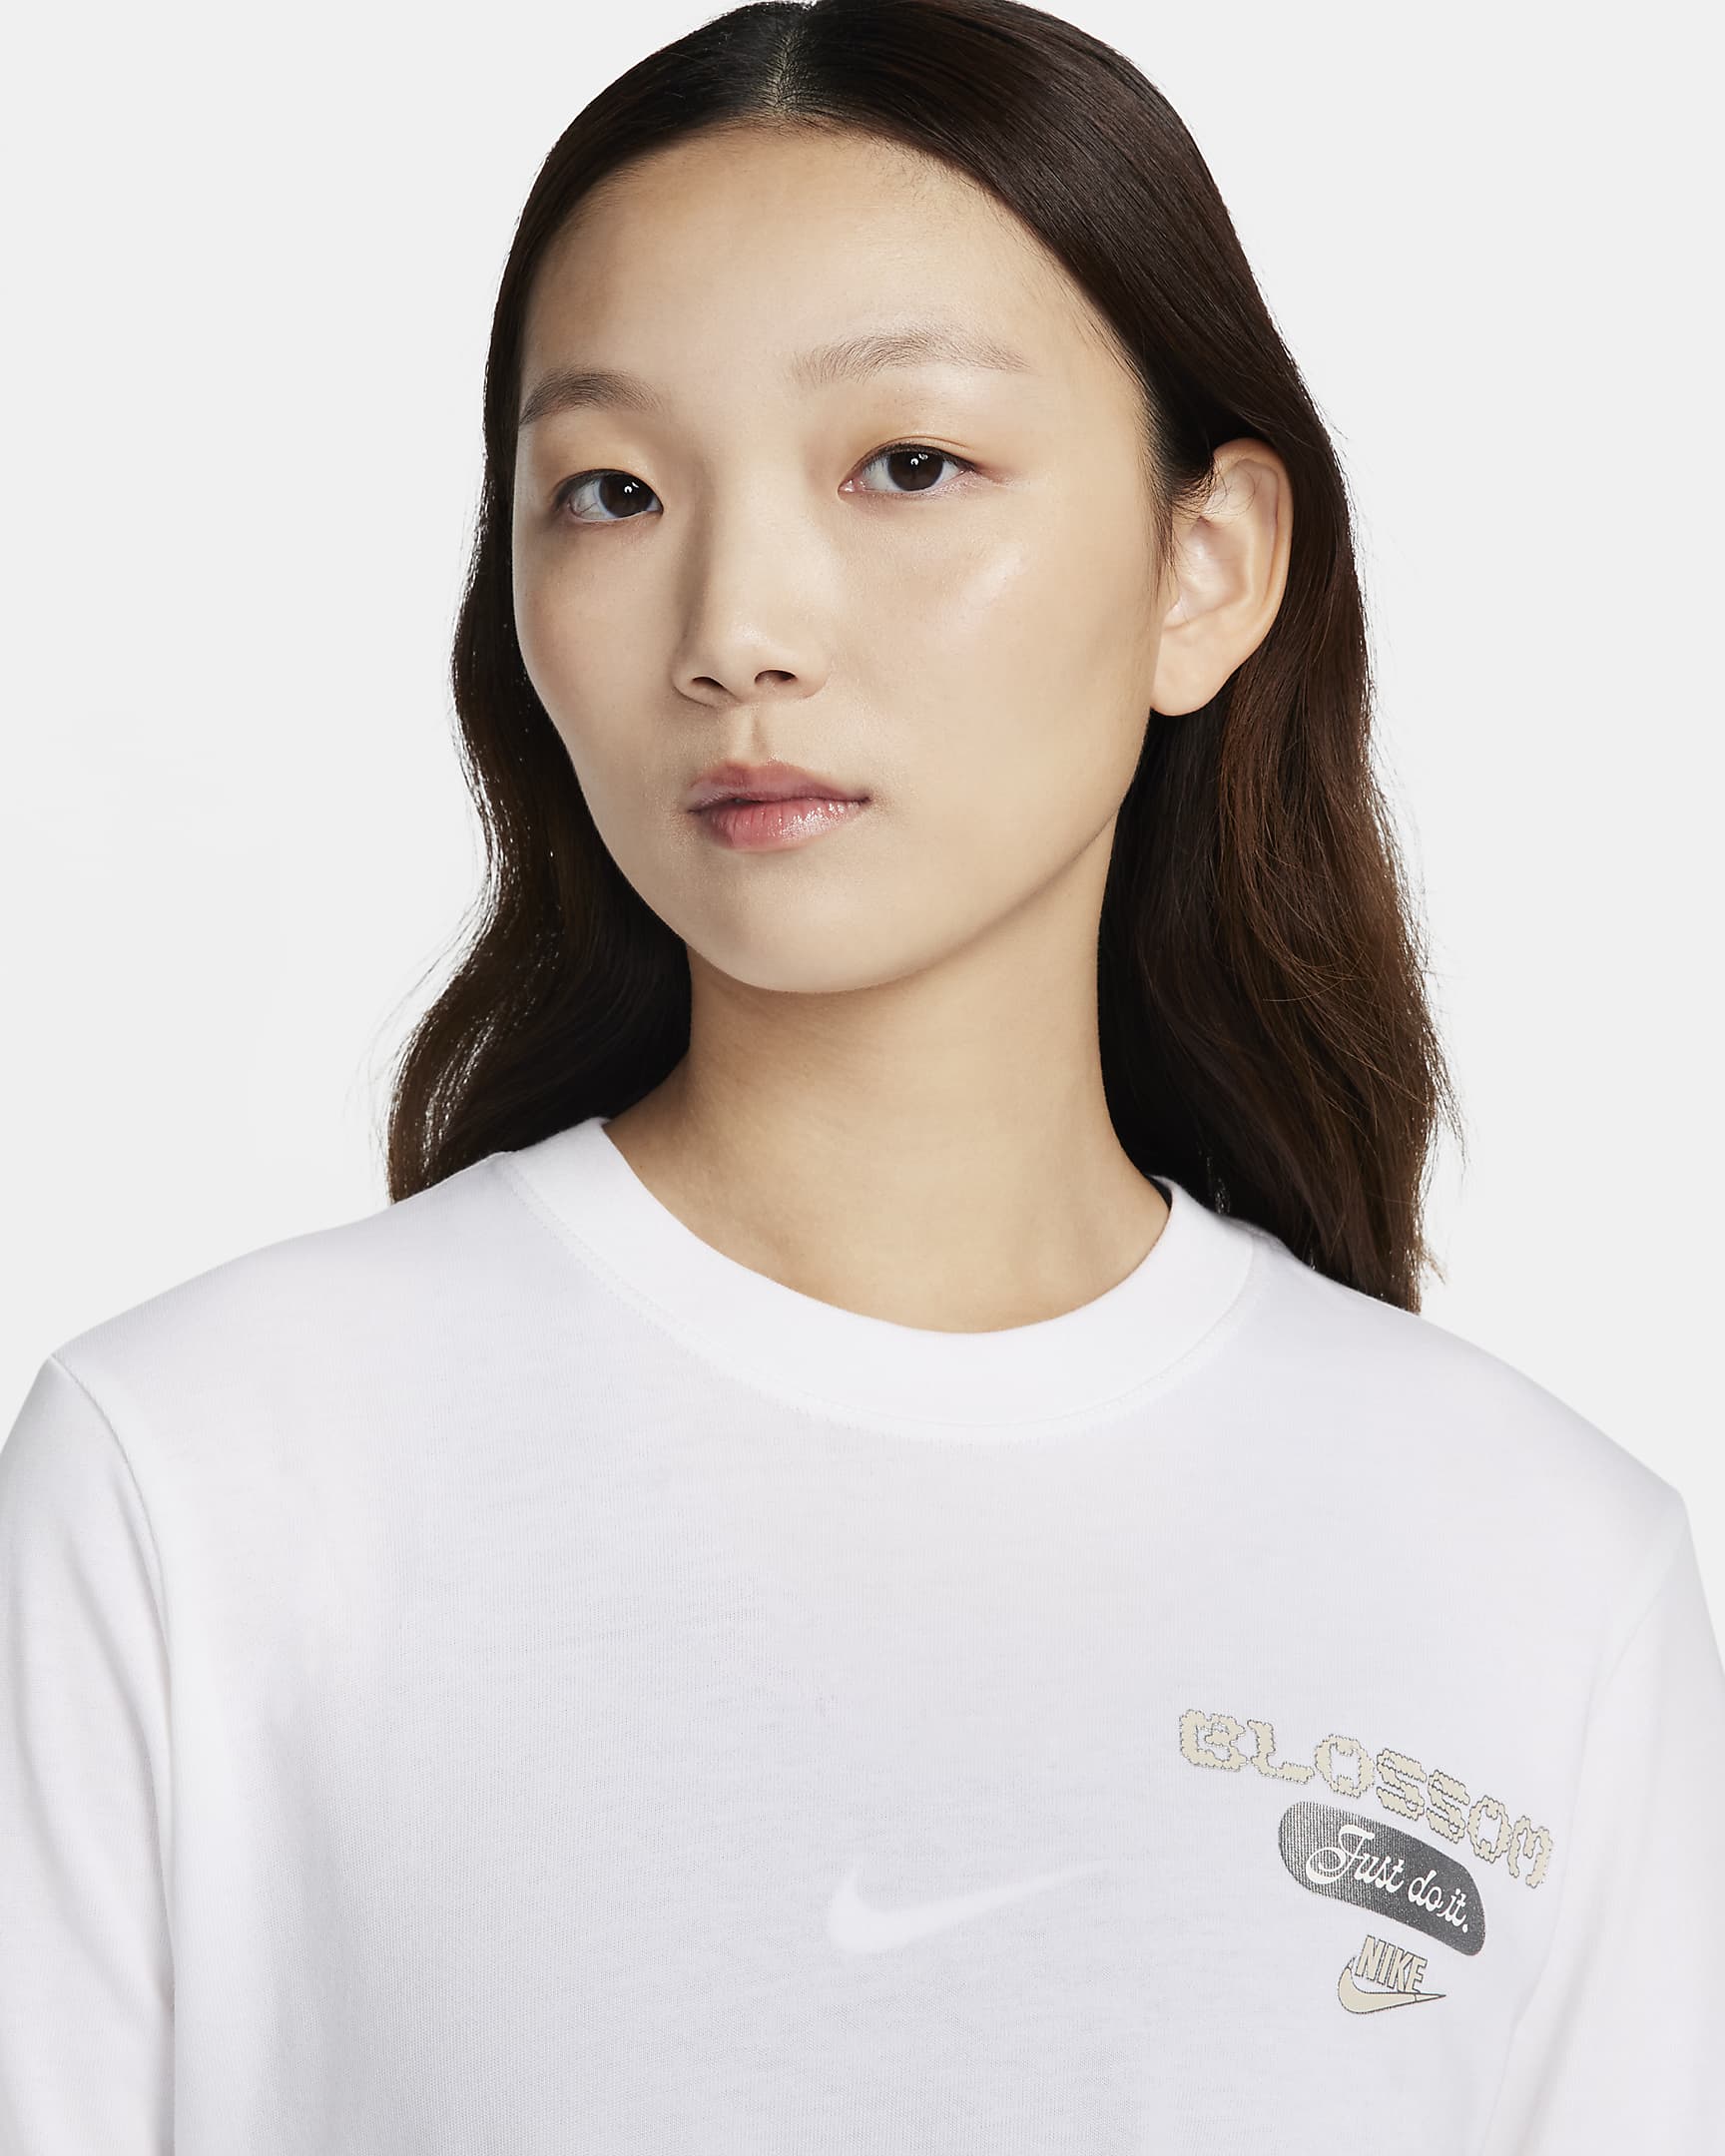 Nike Sportswear Women's Long-Sleeve T-Shirt. Nike ID